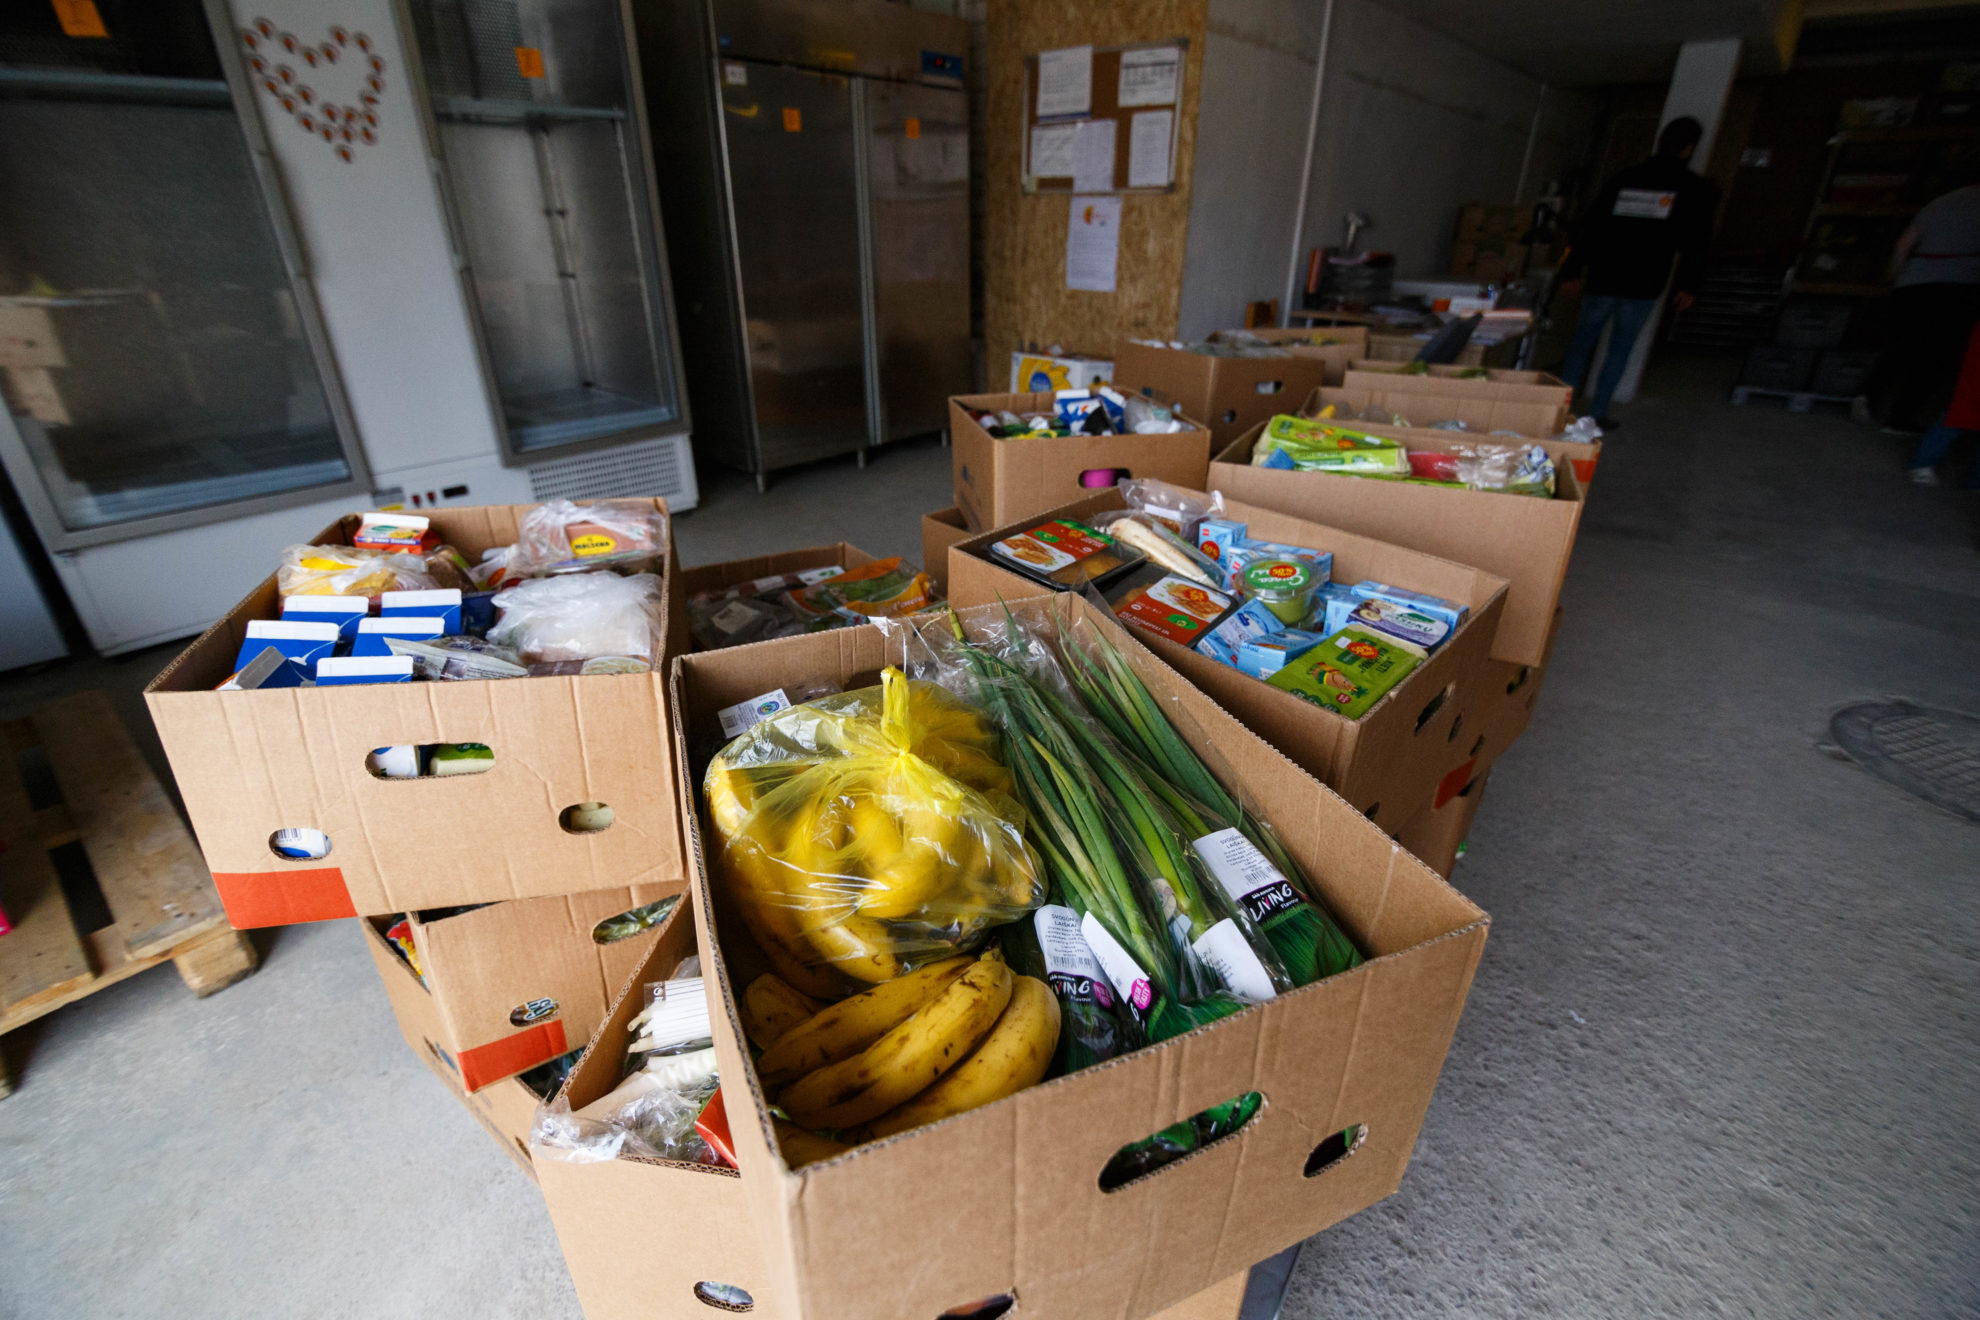 Kas porą mėnesių dalijami Europos pagalbos labiausiai skurstantiems asmenims fondo maisto paketai atsiduria ne ant kiekvieno jų prašiusiojo stalo. Panevėžyje labdaros ir paramos fondo „Maisto banko“ sandėliuose lieka neatsiimtų maždaug 6 procentai paketų.